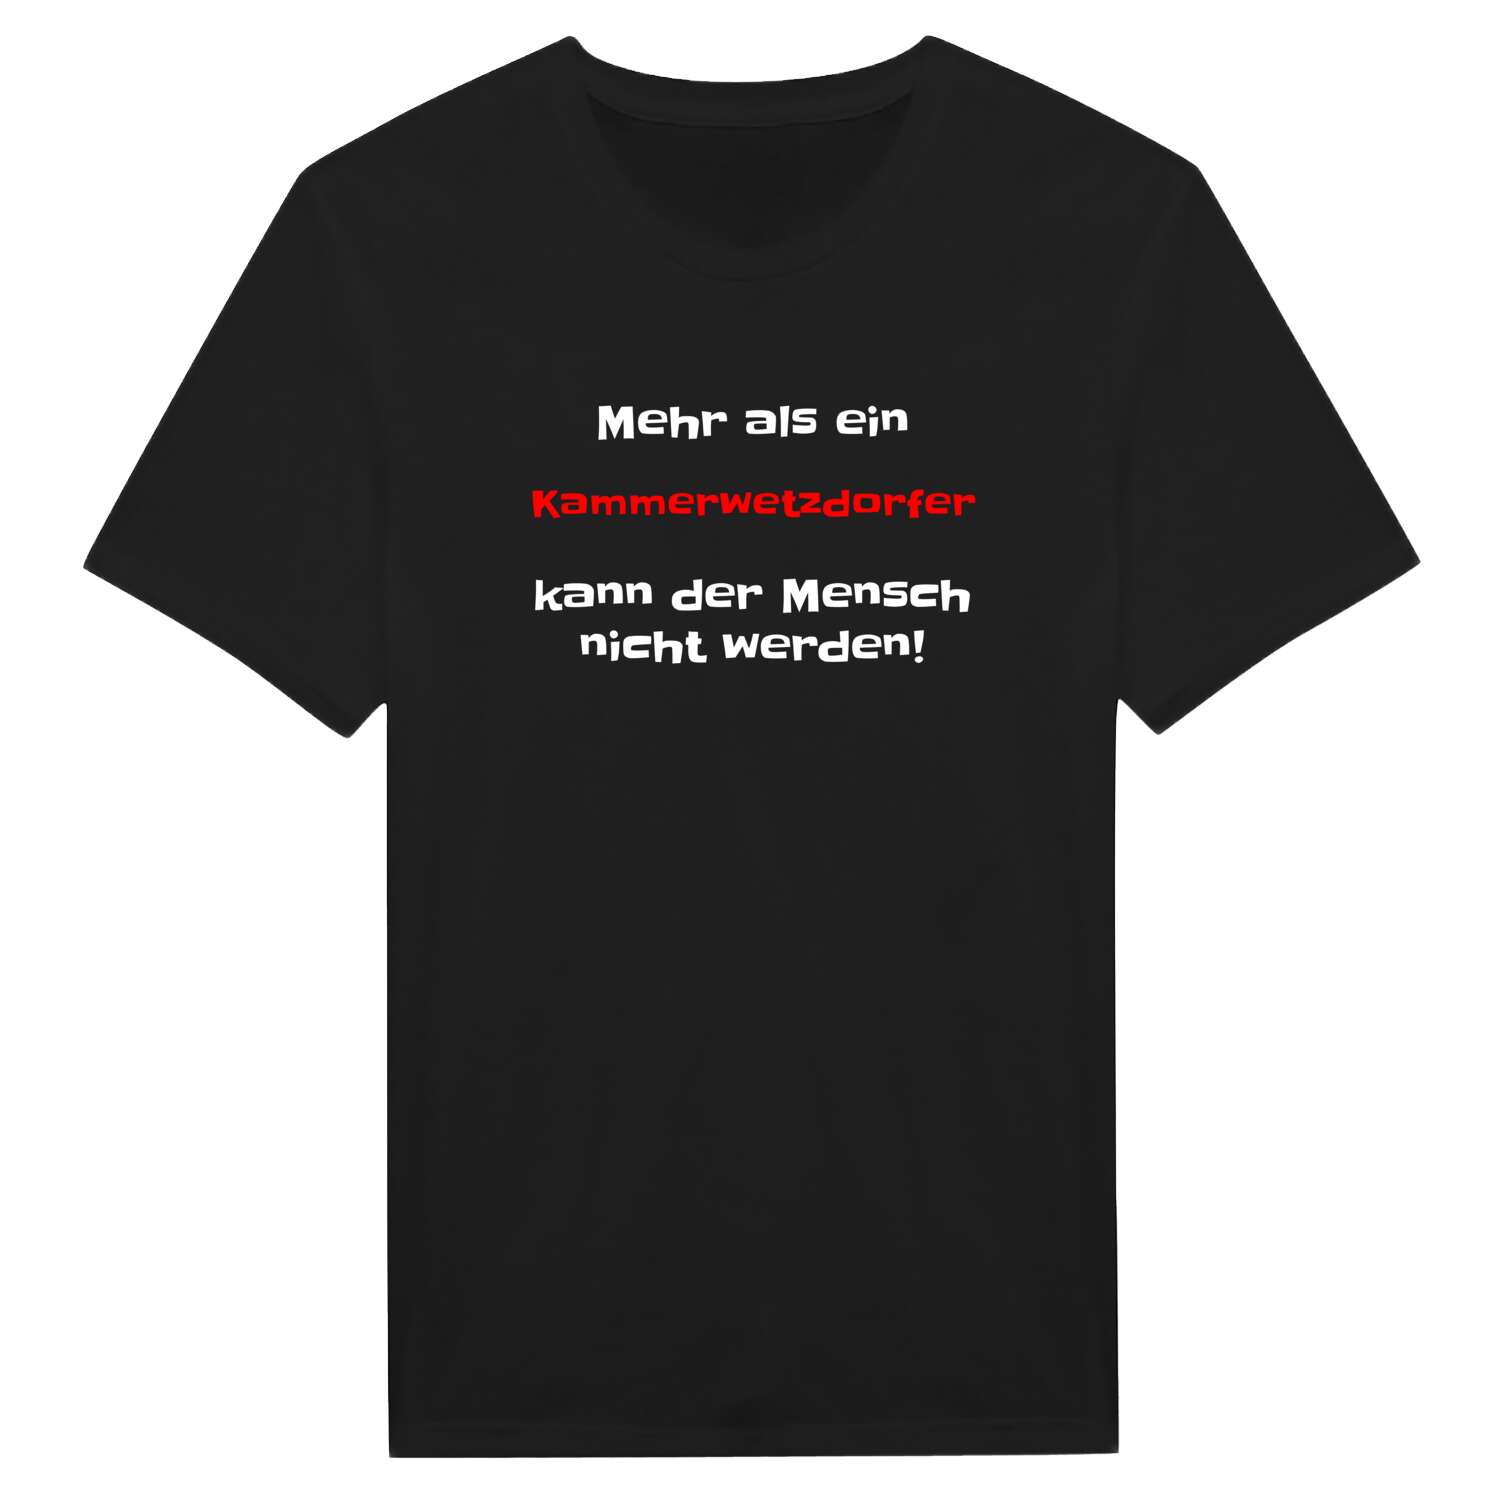 Kammerwetzdorf T-Shirt »Mehr als ein«